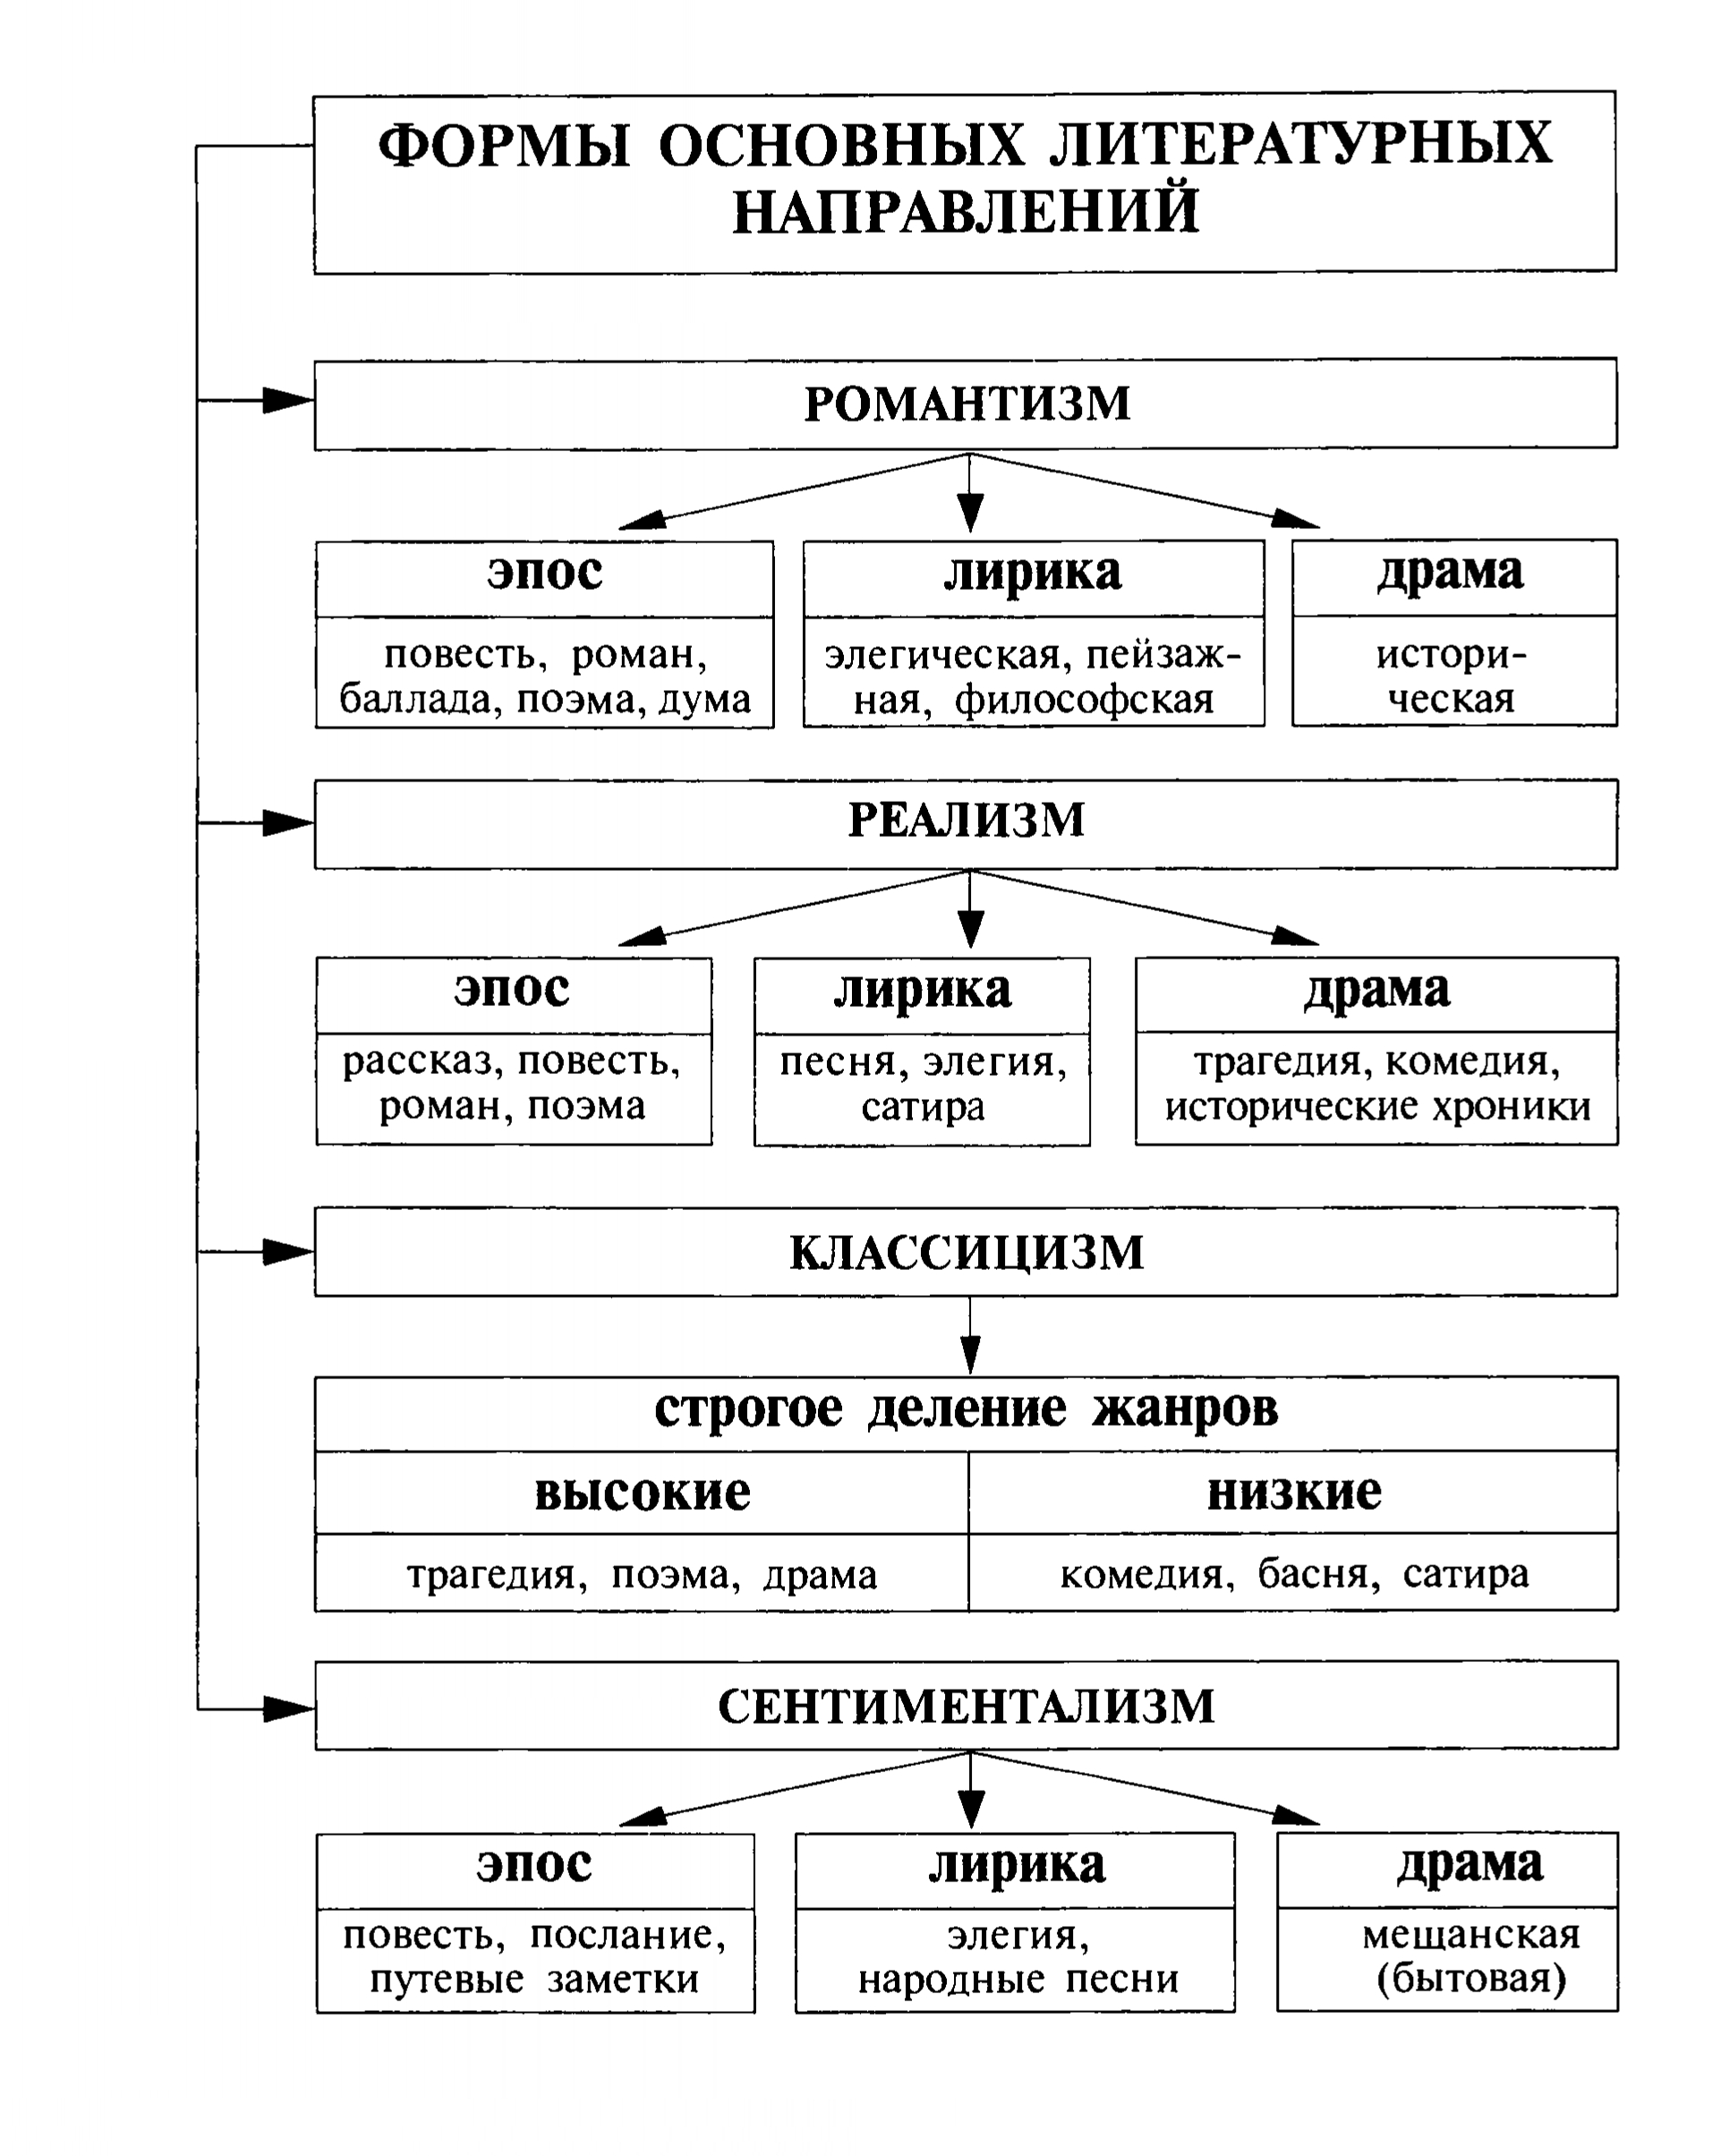 Формы основных литературных направлений (таблица)